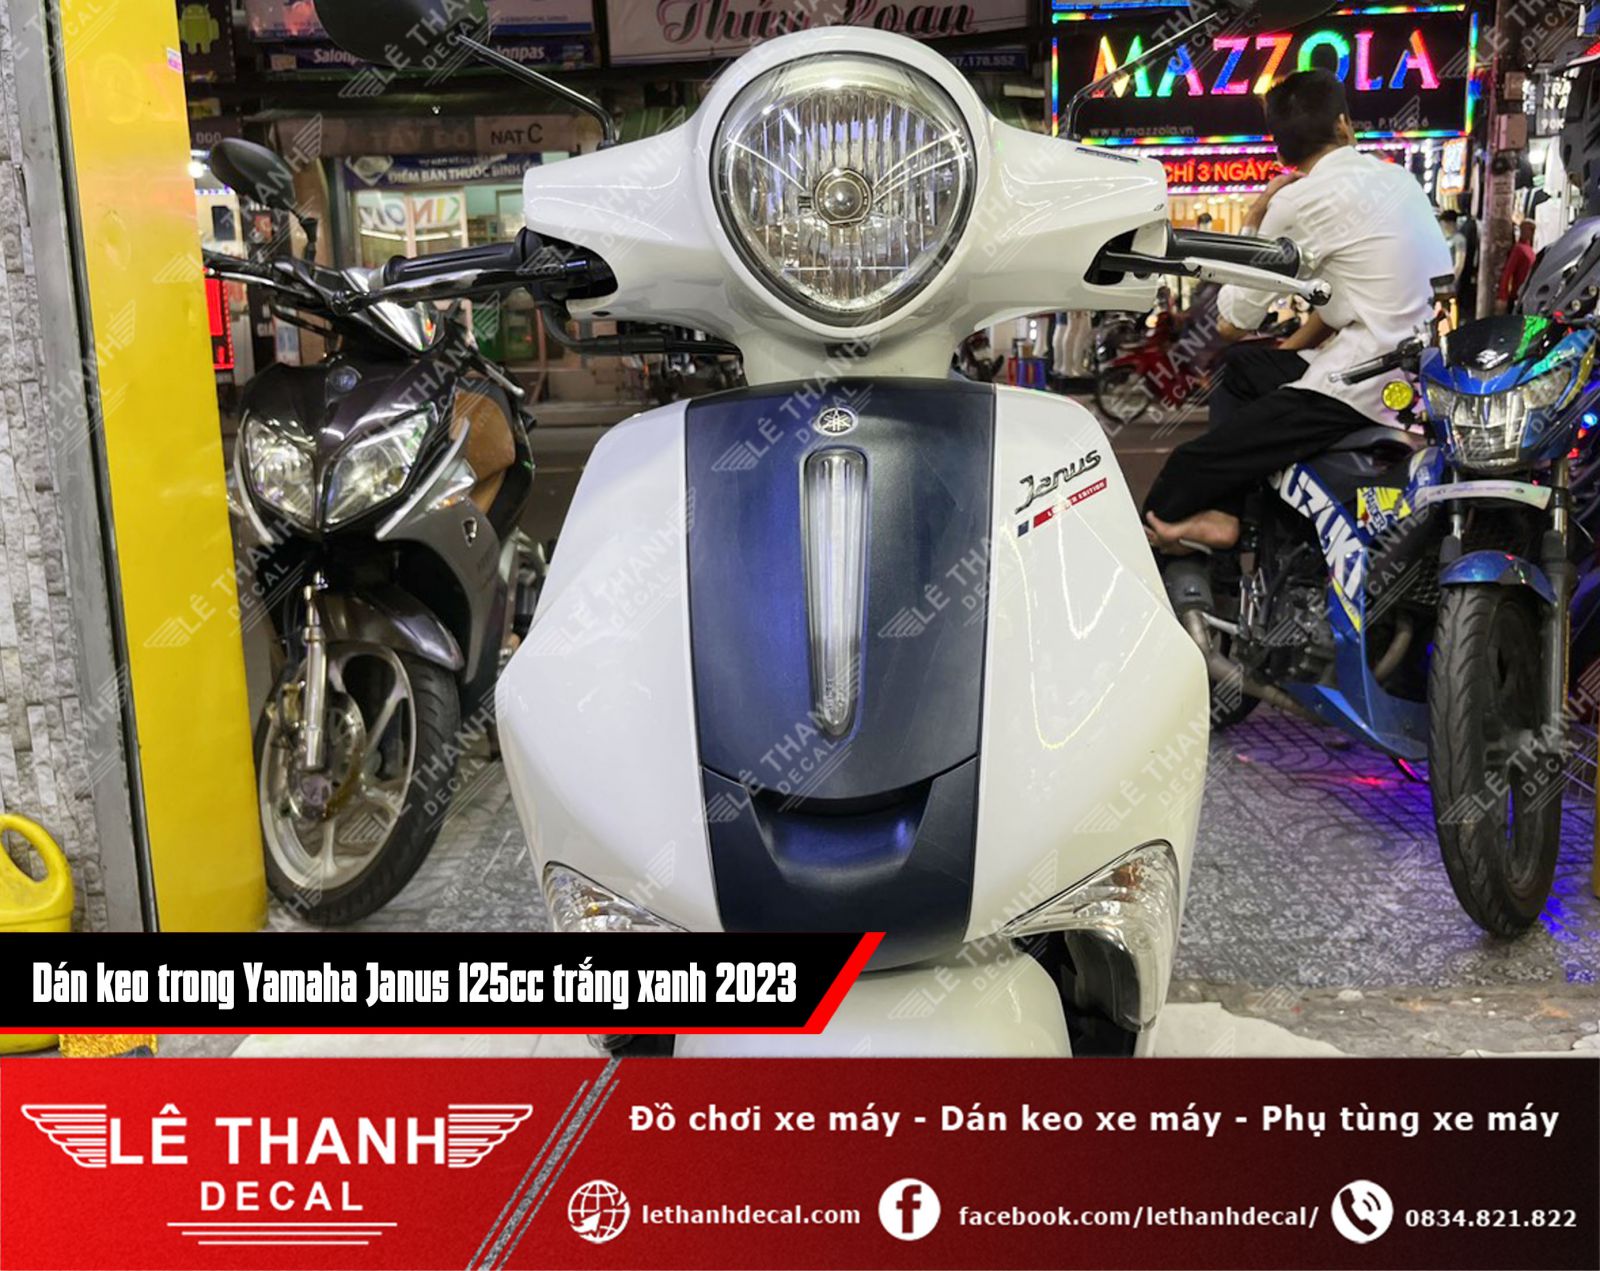 Dán keo trong cho xe Yamaha Janus 125cc trắng xanh 2023 